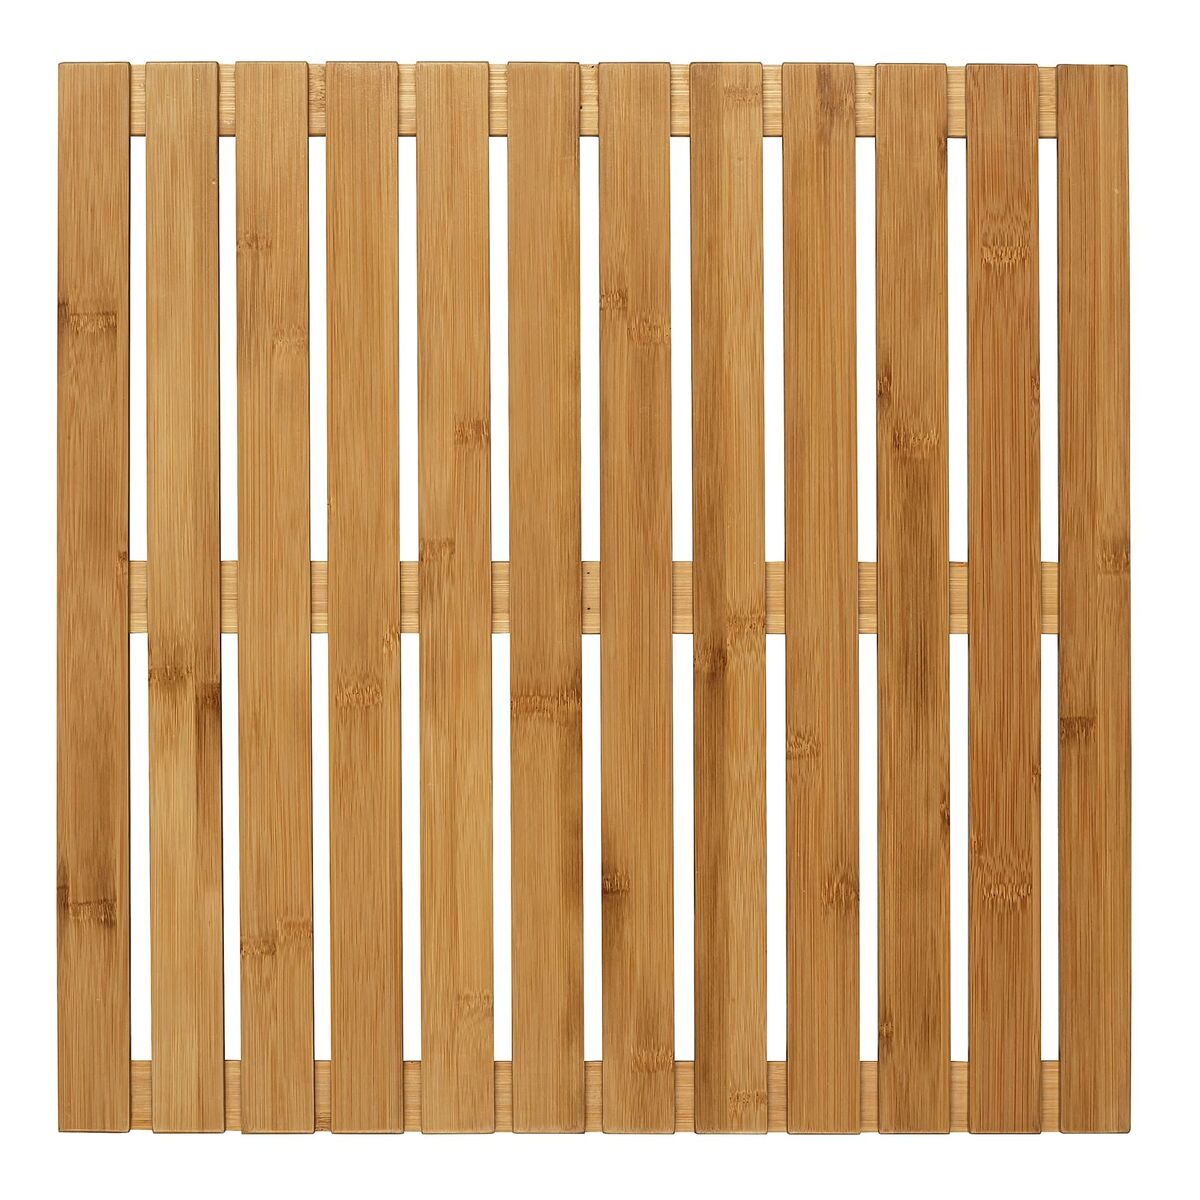 Parkiet Wenko 24610100 50 x 50 cm Wnętrze/Zewnętrzny Bambus